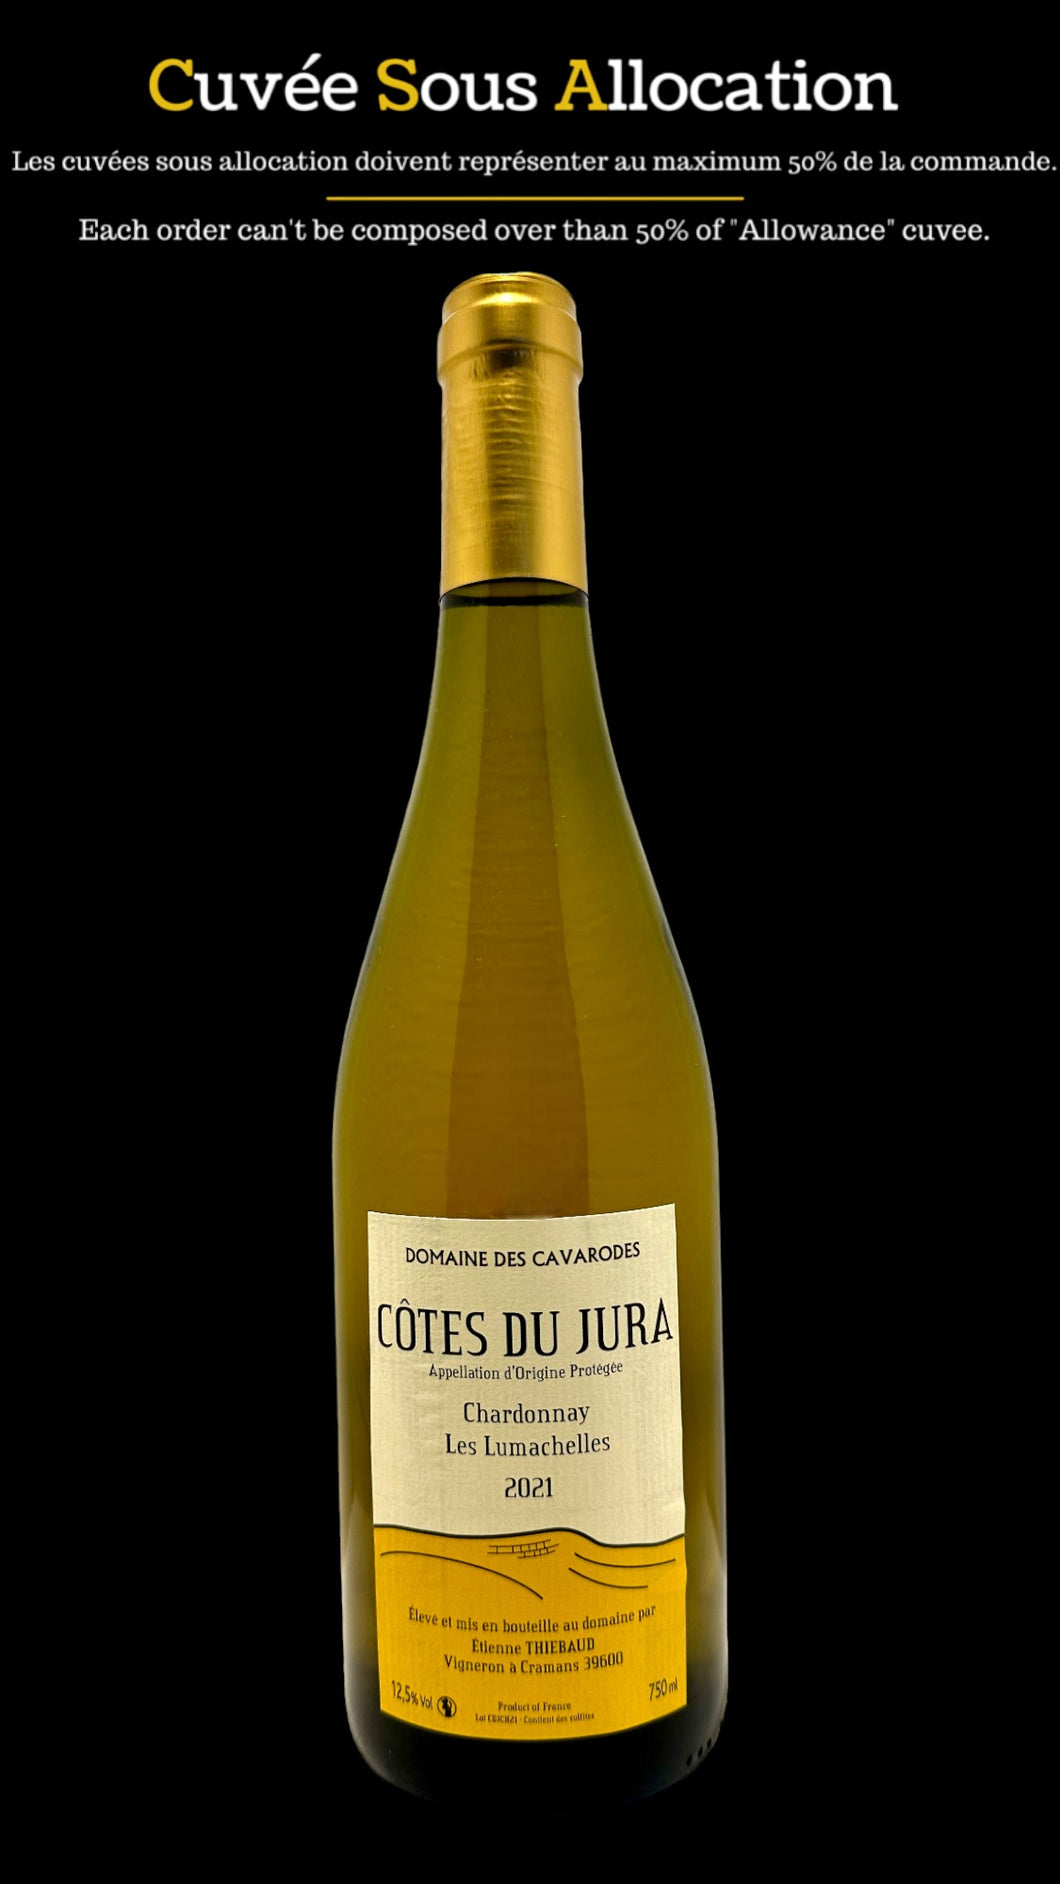 Côtes du jura Chardonnay Les Lumachelles 2021 Domaine des cavarodes 